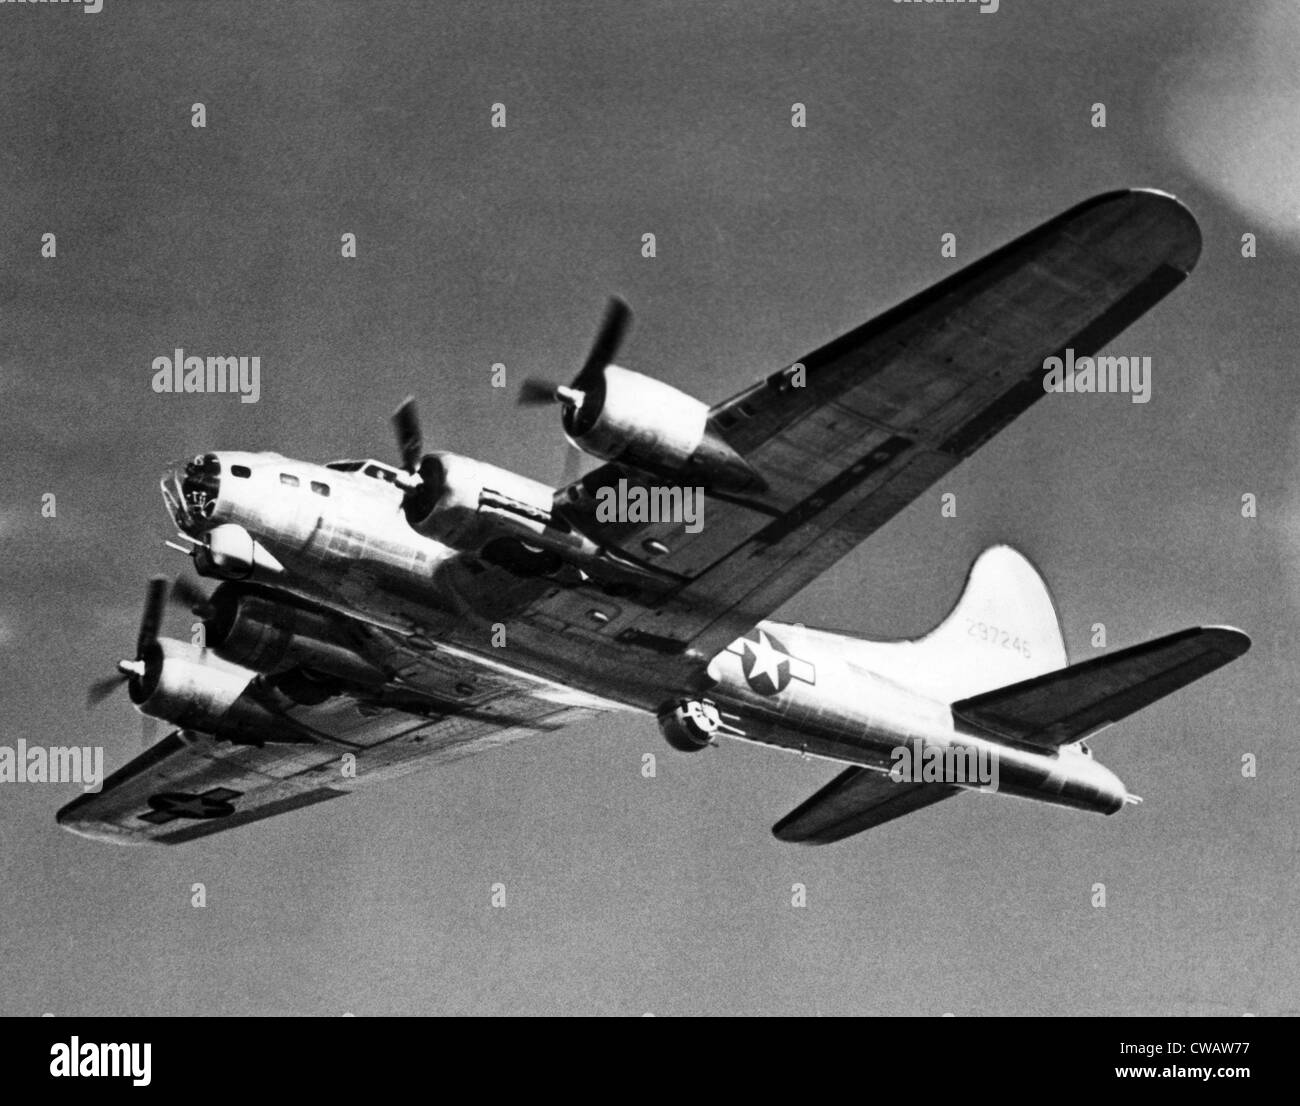 Boeing B-17 Flying Fortress, utilisé contre les Allemands pendant la Seconde Guerre mondiale, mars 1944. Avec la permission de : Archives CSU/Everett Collection Banque D'Images